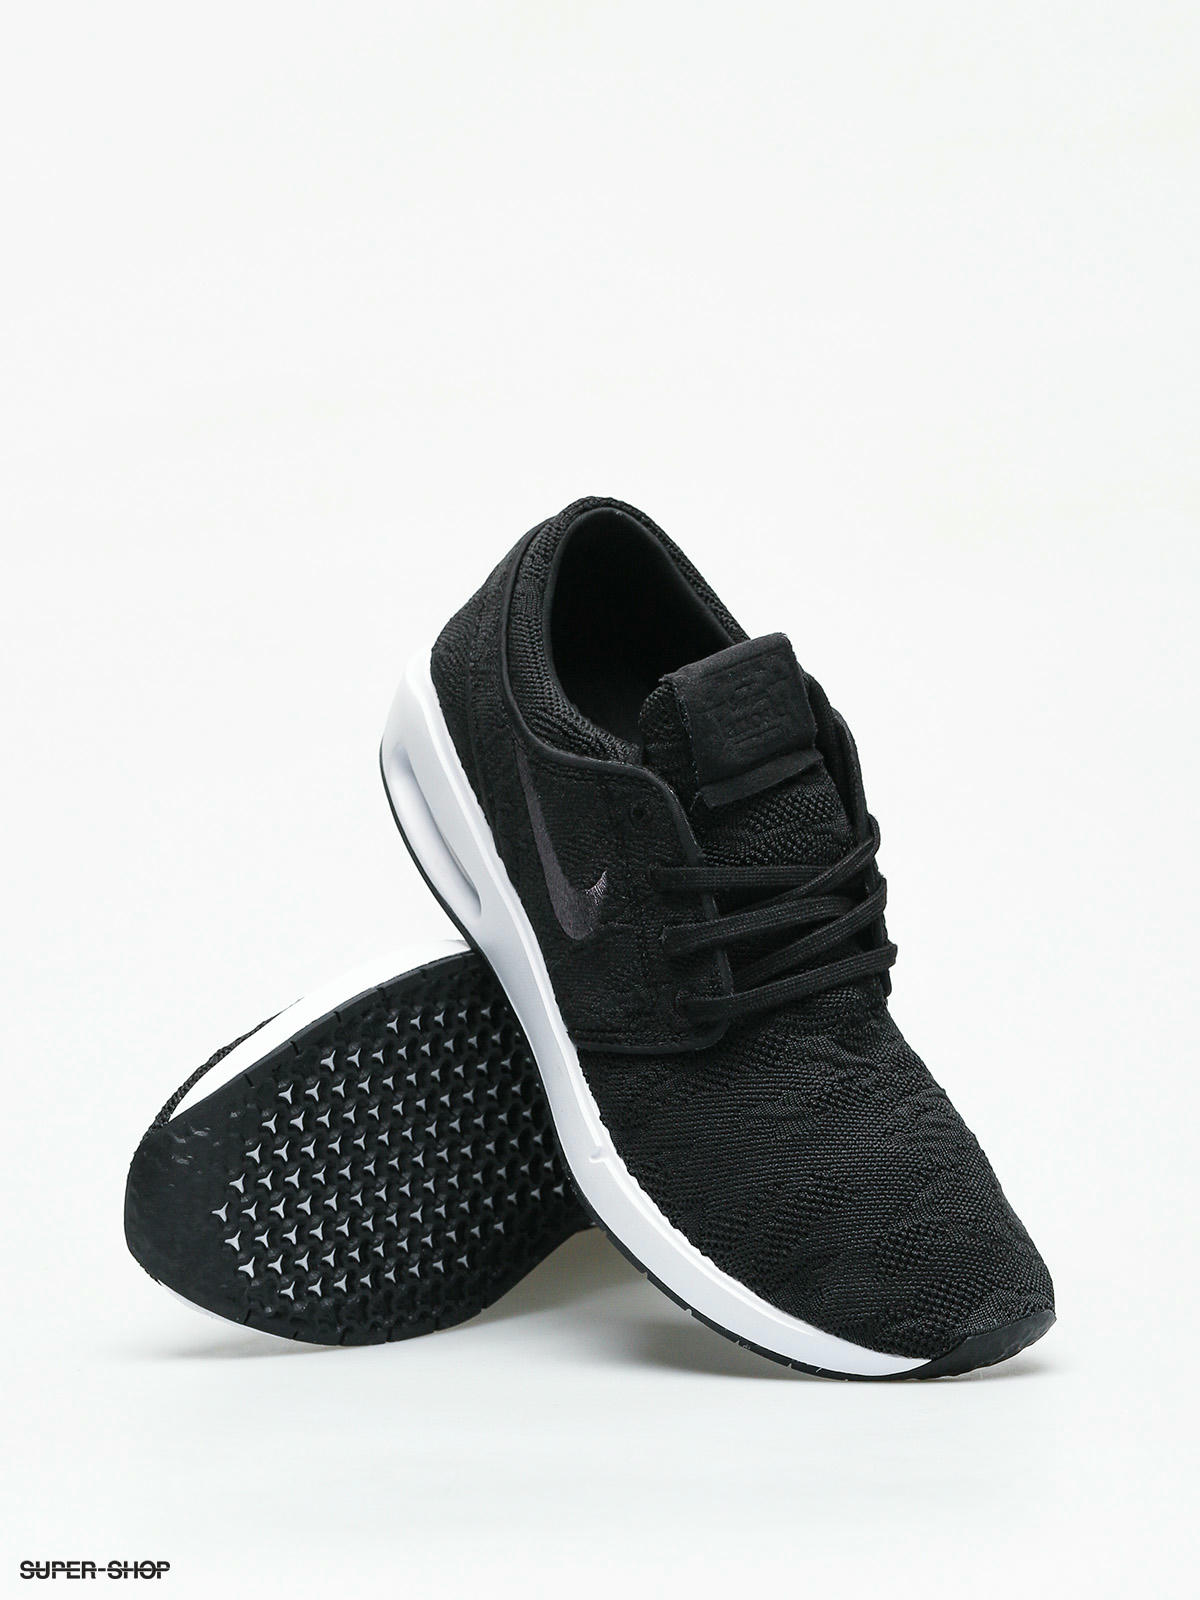 sb air max janoski 2 shoes - black / anthracite - white